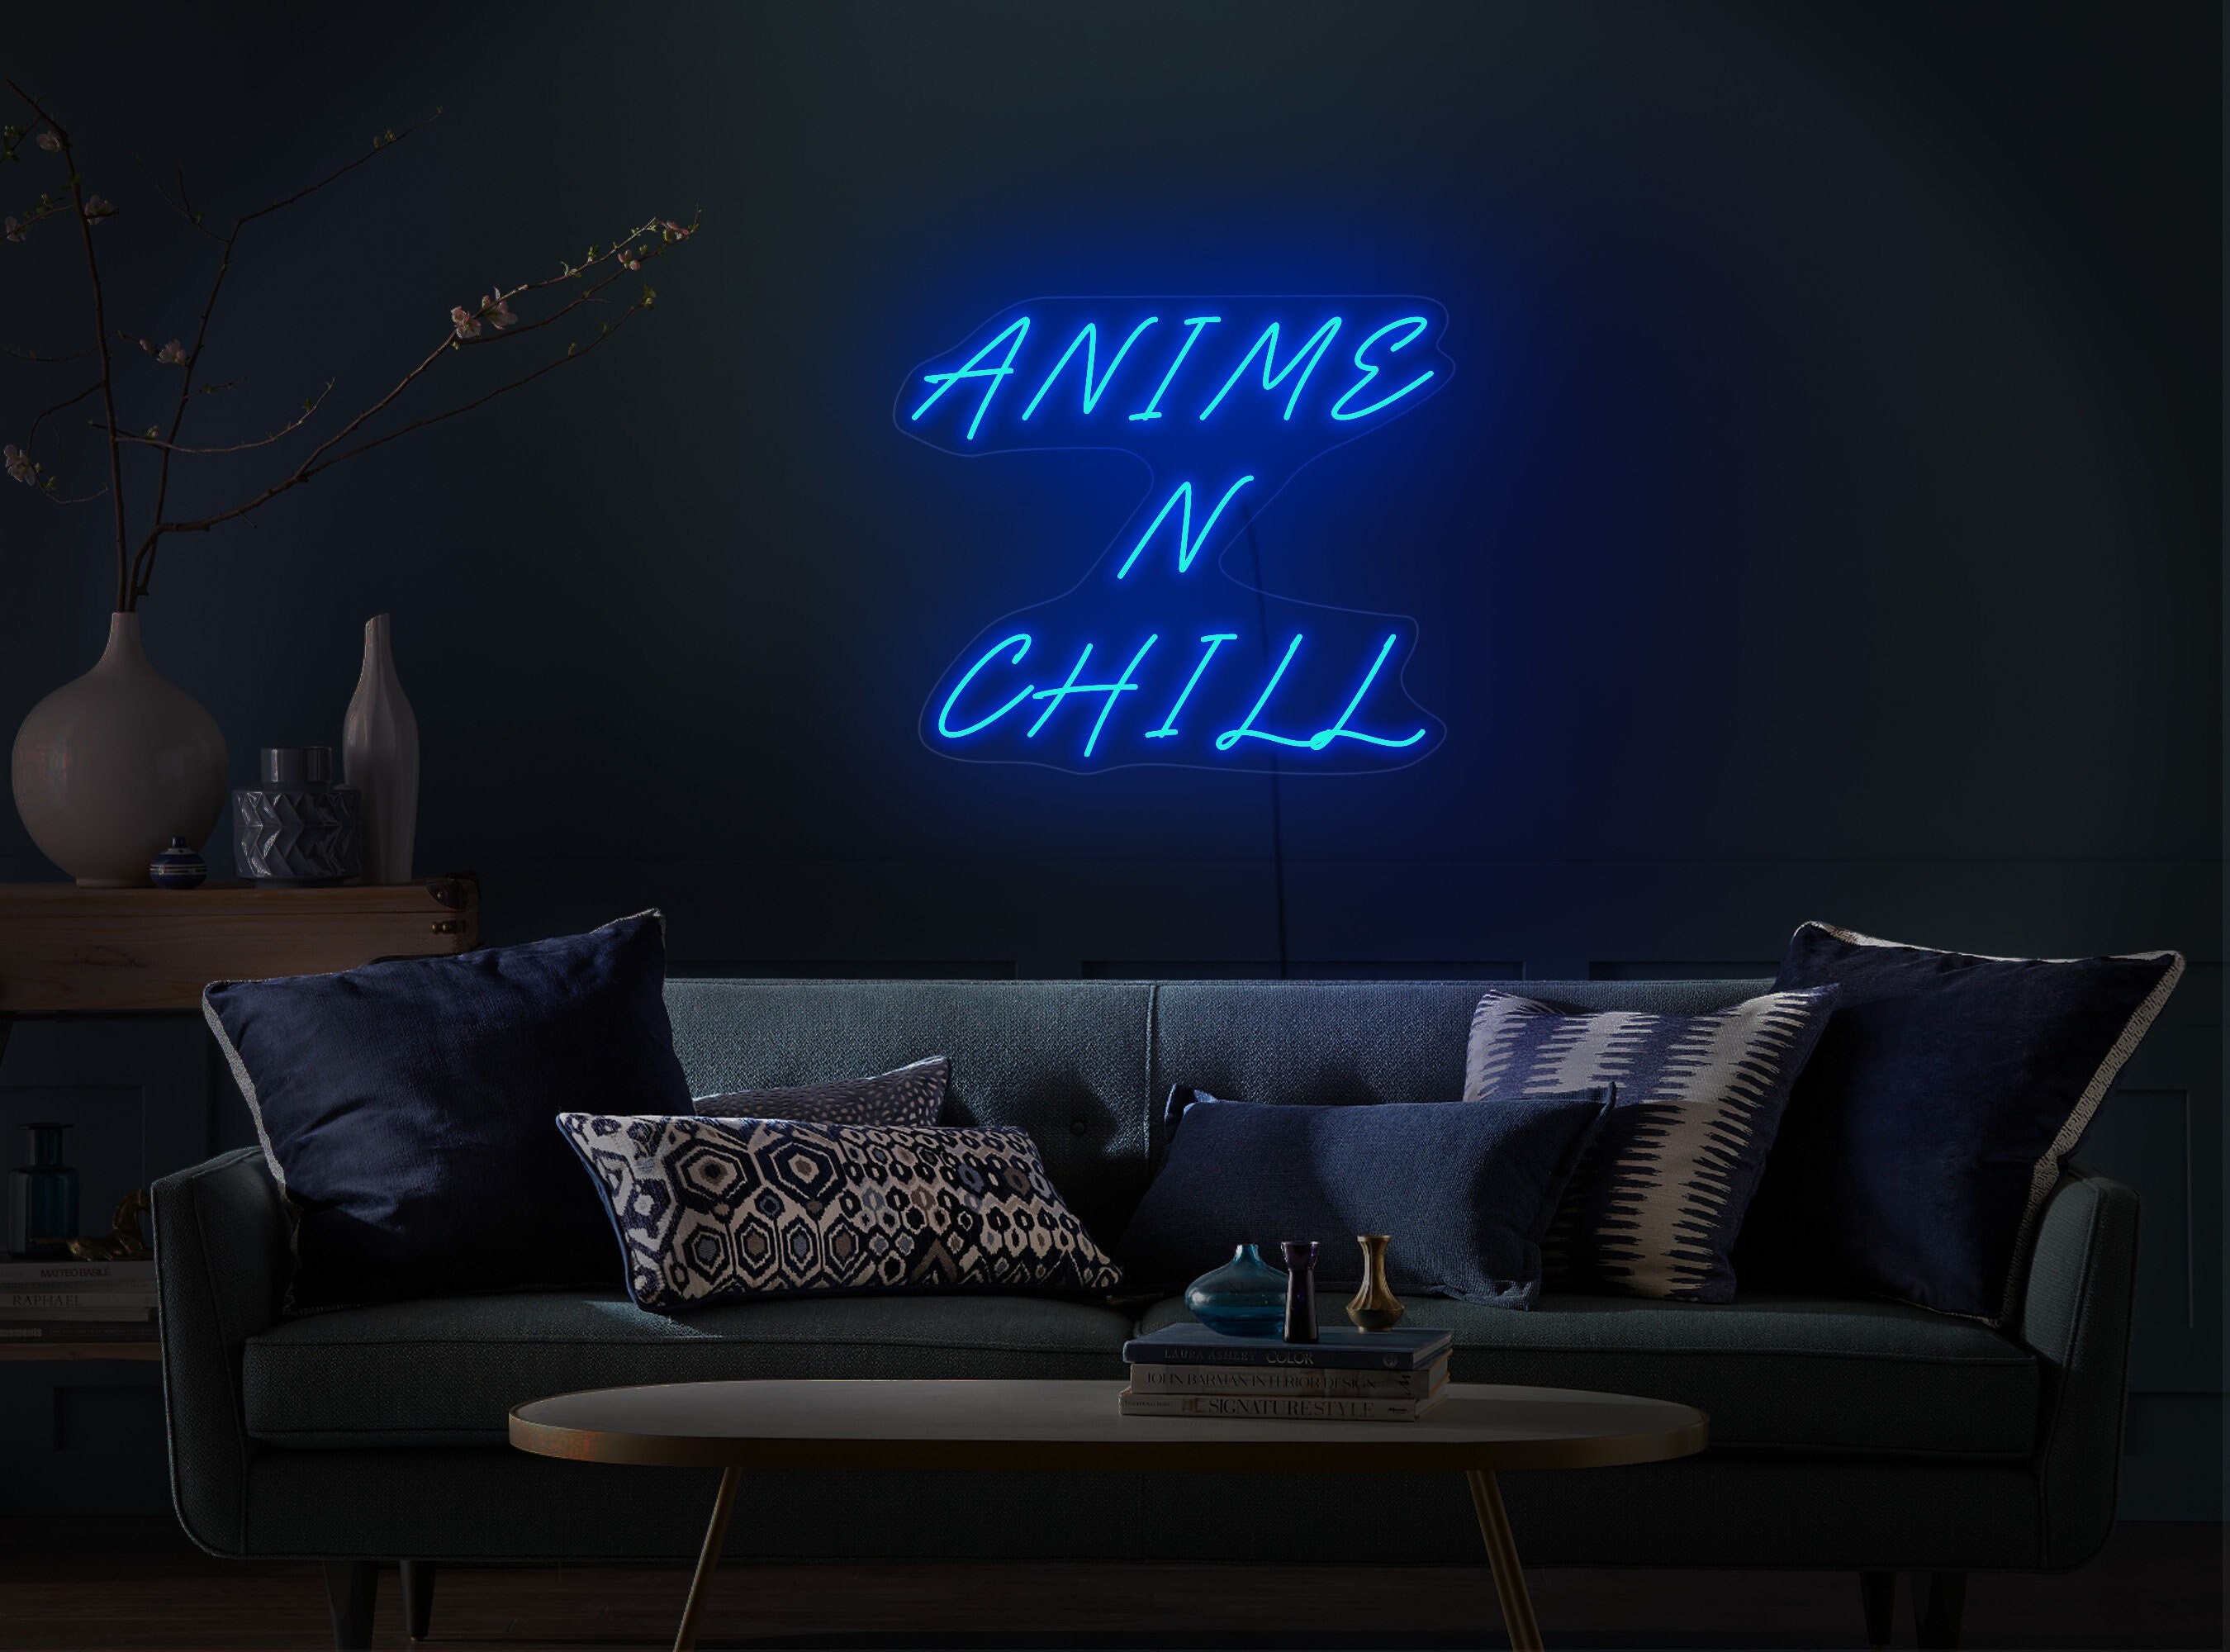 ANIME GIRL NEON LIGHTS LED SIGN Game Room Wall Decor HOME MANGA GIFT  BIRTHDAY  eBay